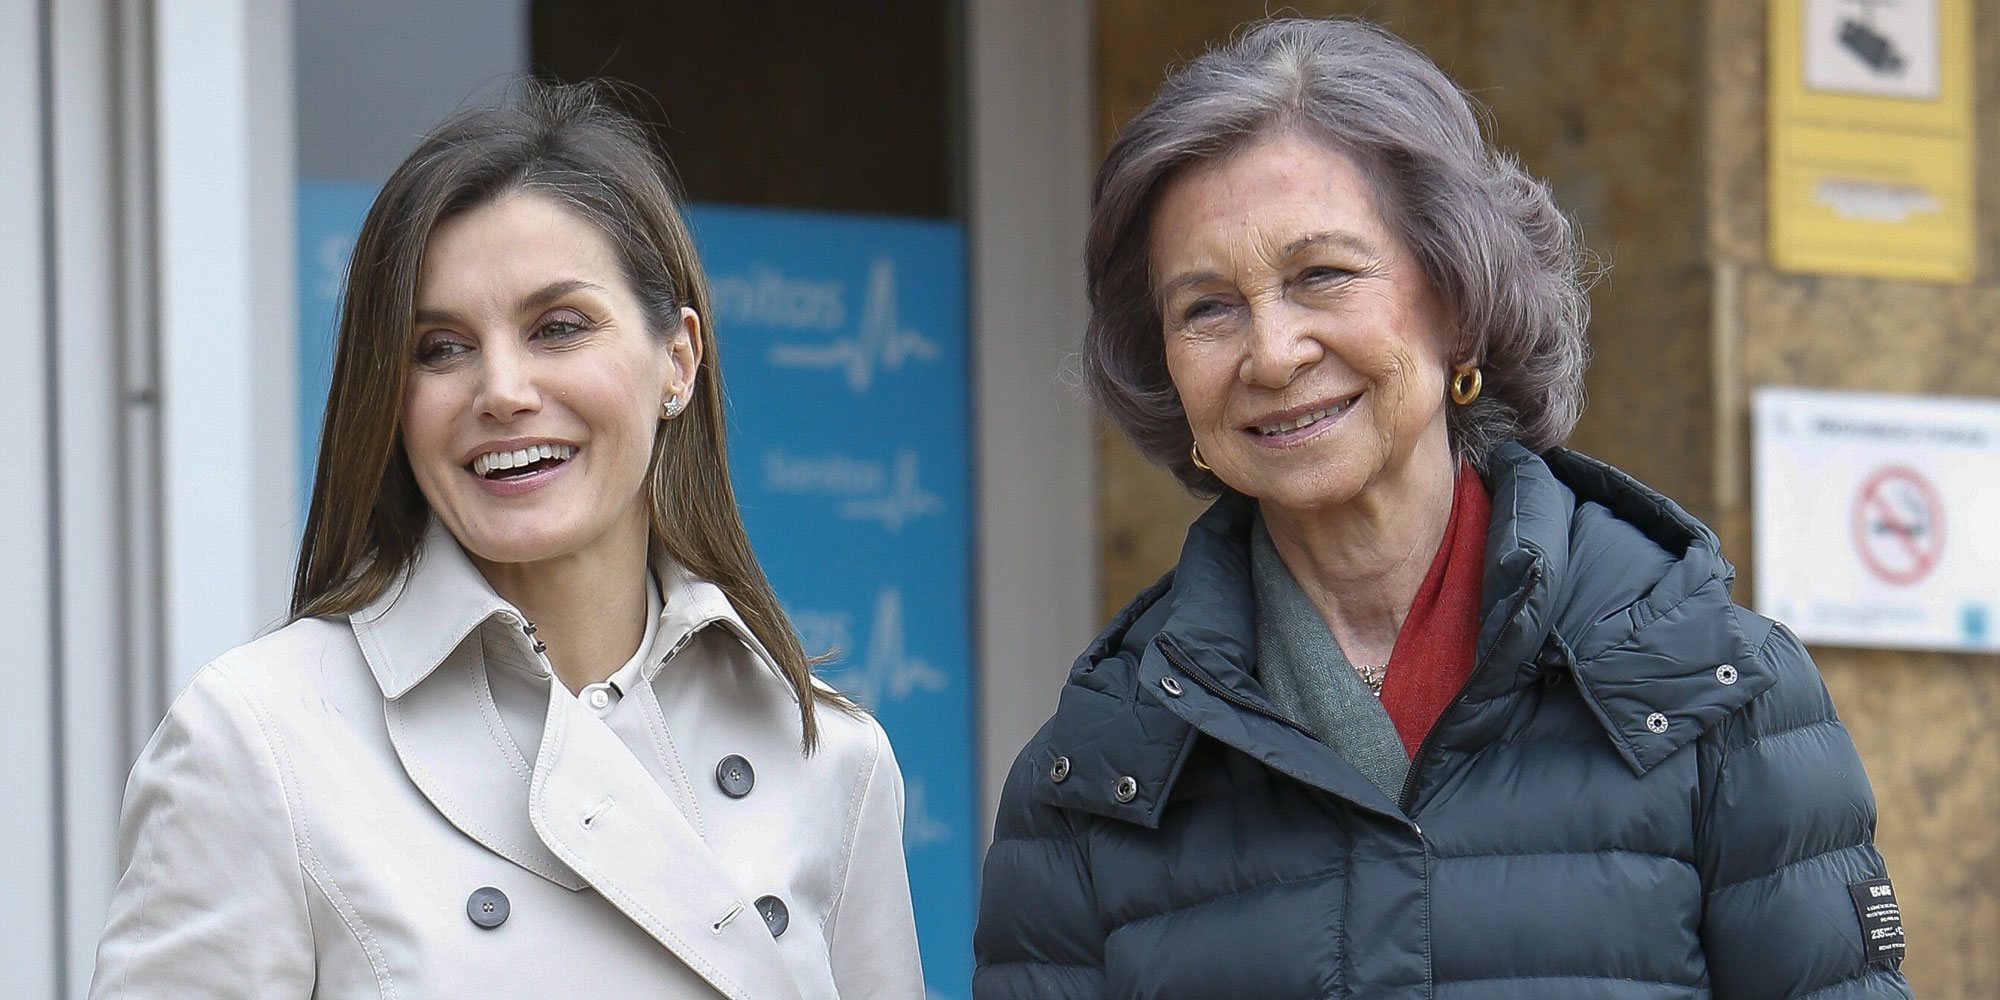 Corinna elogia a la Reina Letizia y carga contra la Reina Sofía: "Soy víctima de su afán de venganza"